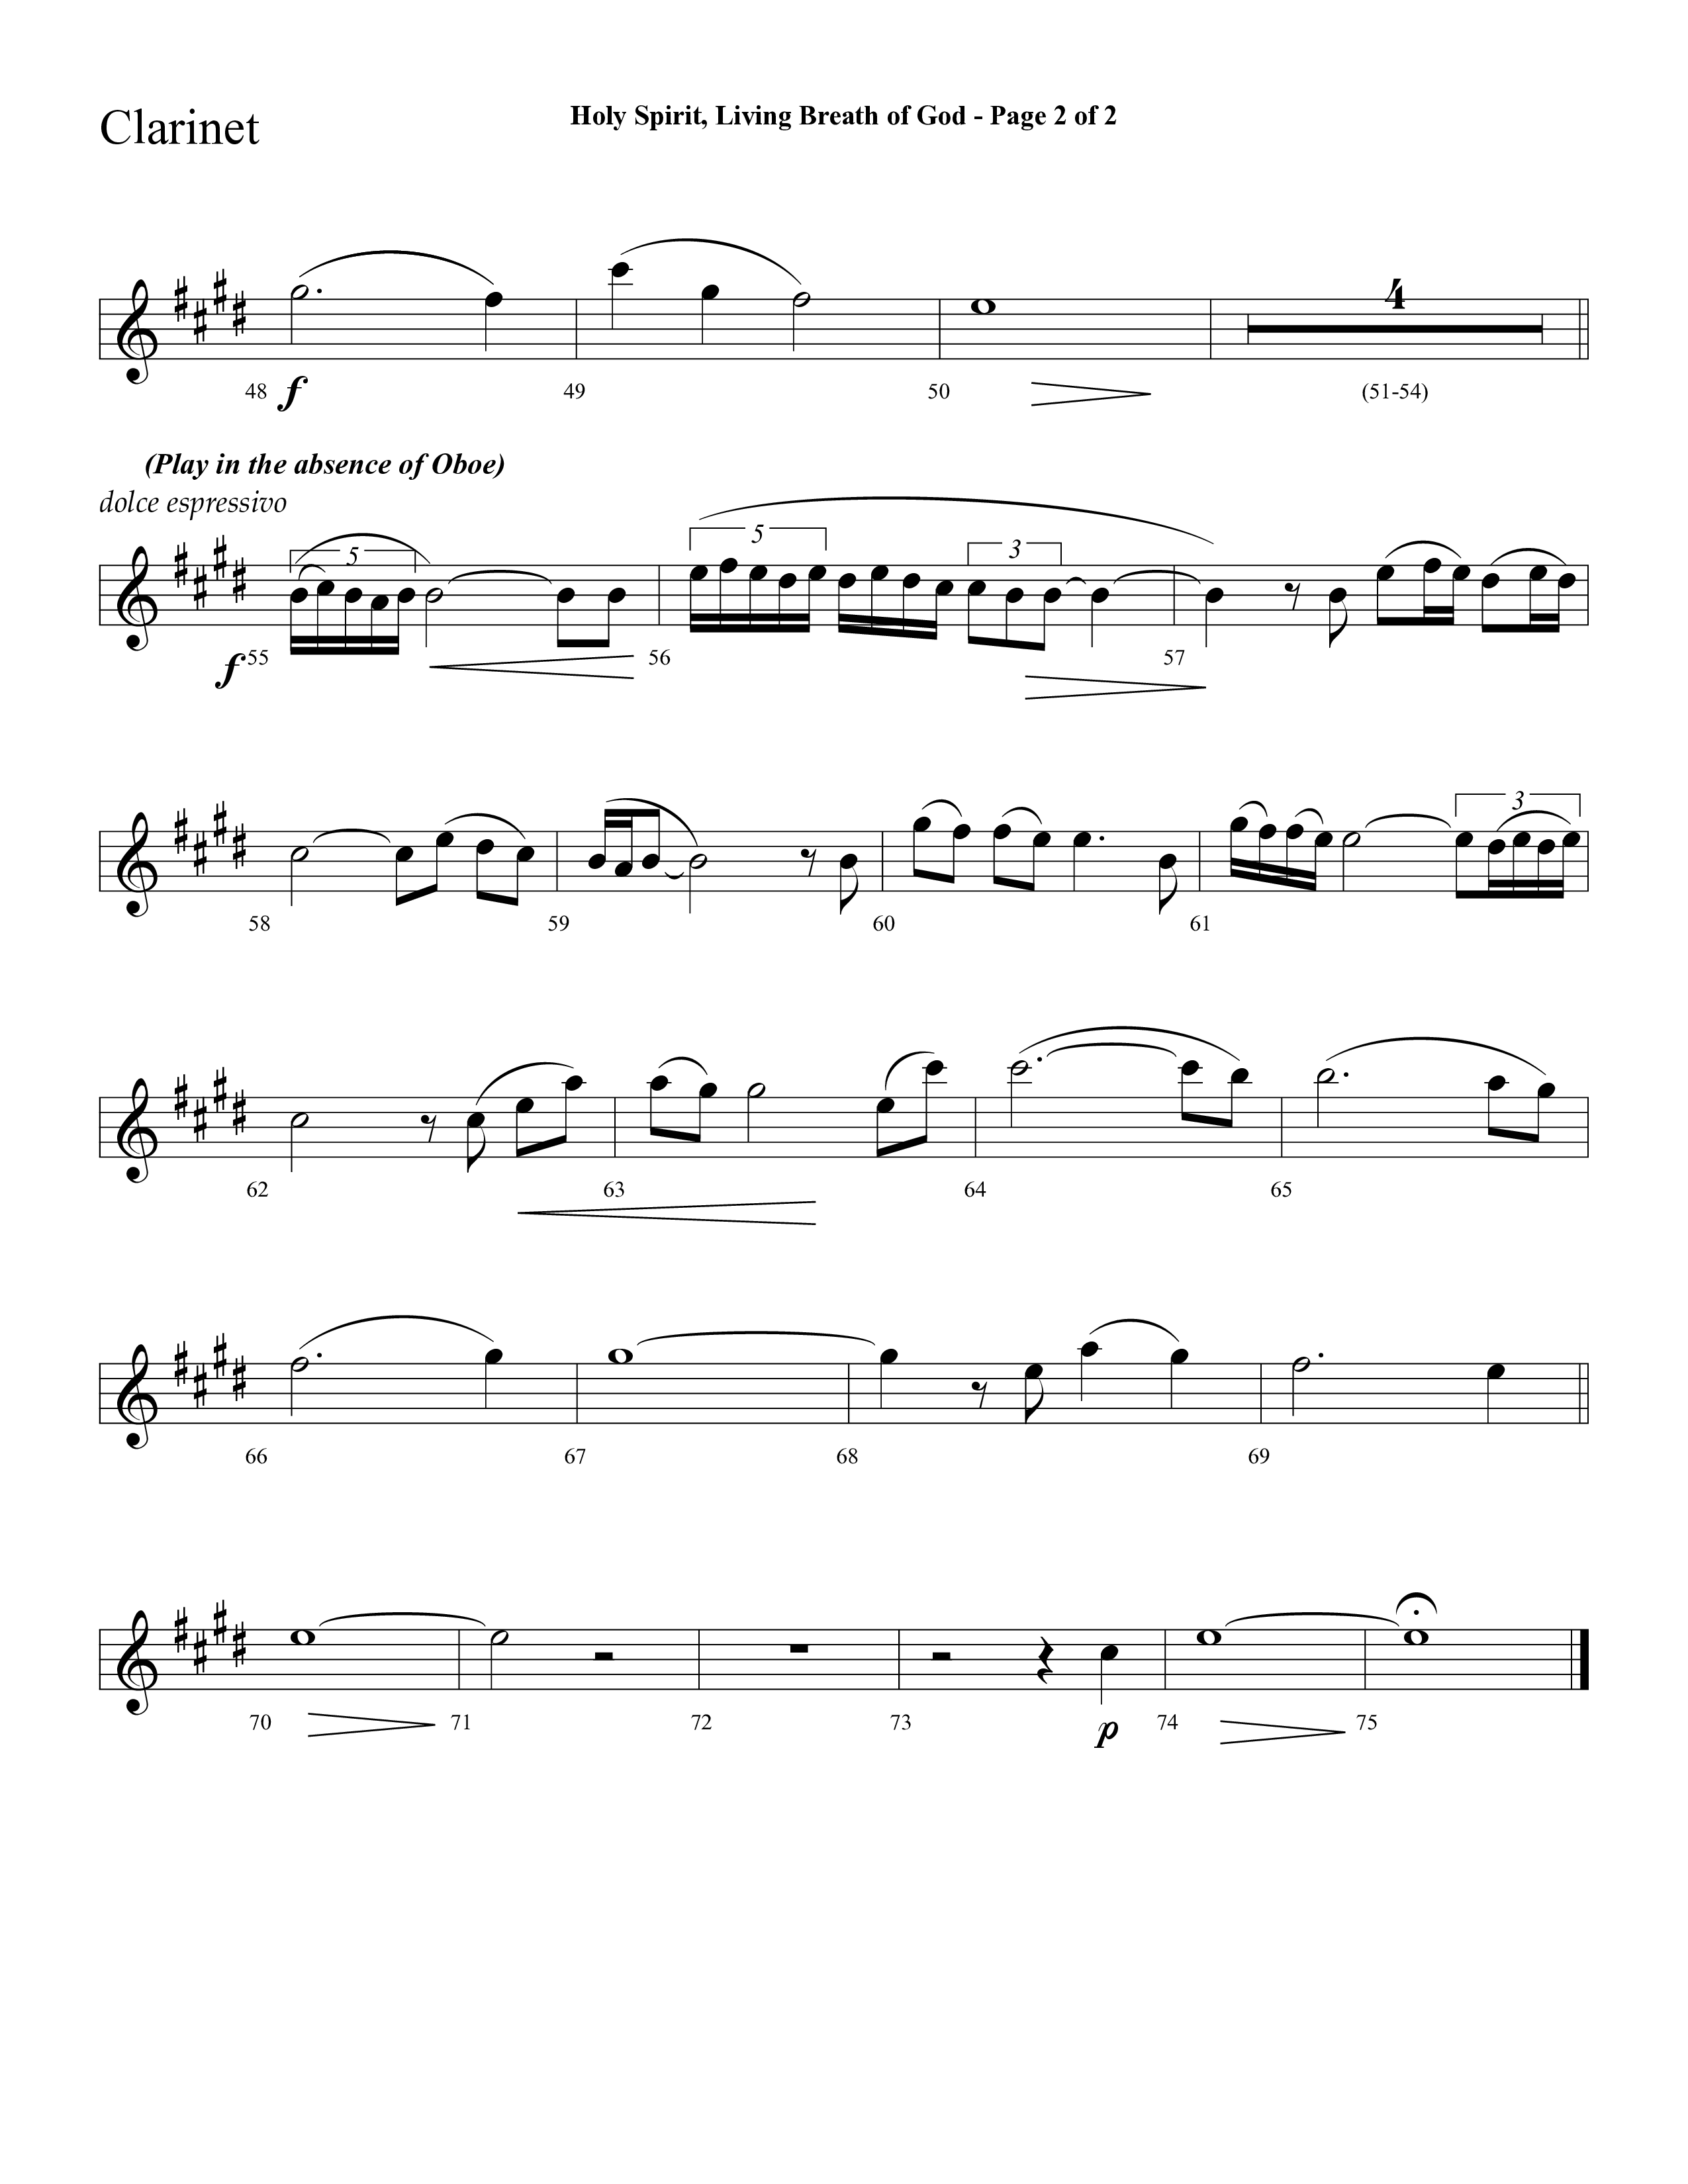 Holy Spirit Living Breath Of God (with Gabriel's Oboe) (Choral Anthem SATB) Clarinet 1/2 (Lifeway Choral / Arr. David Hamilton)